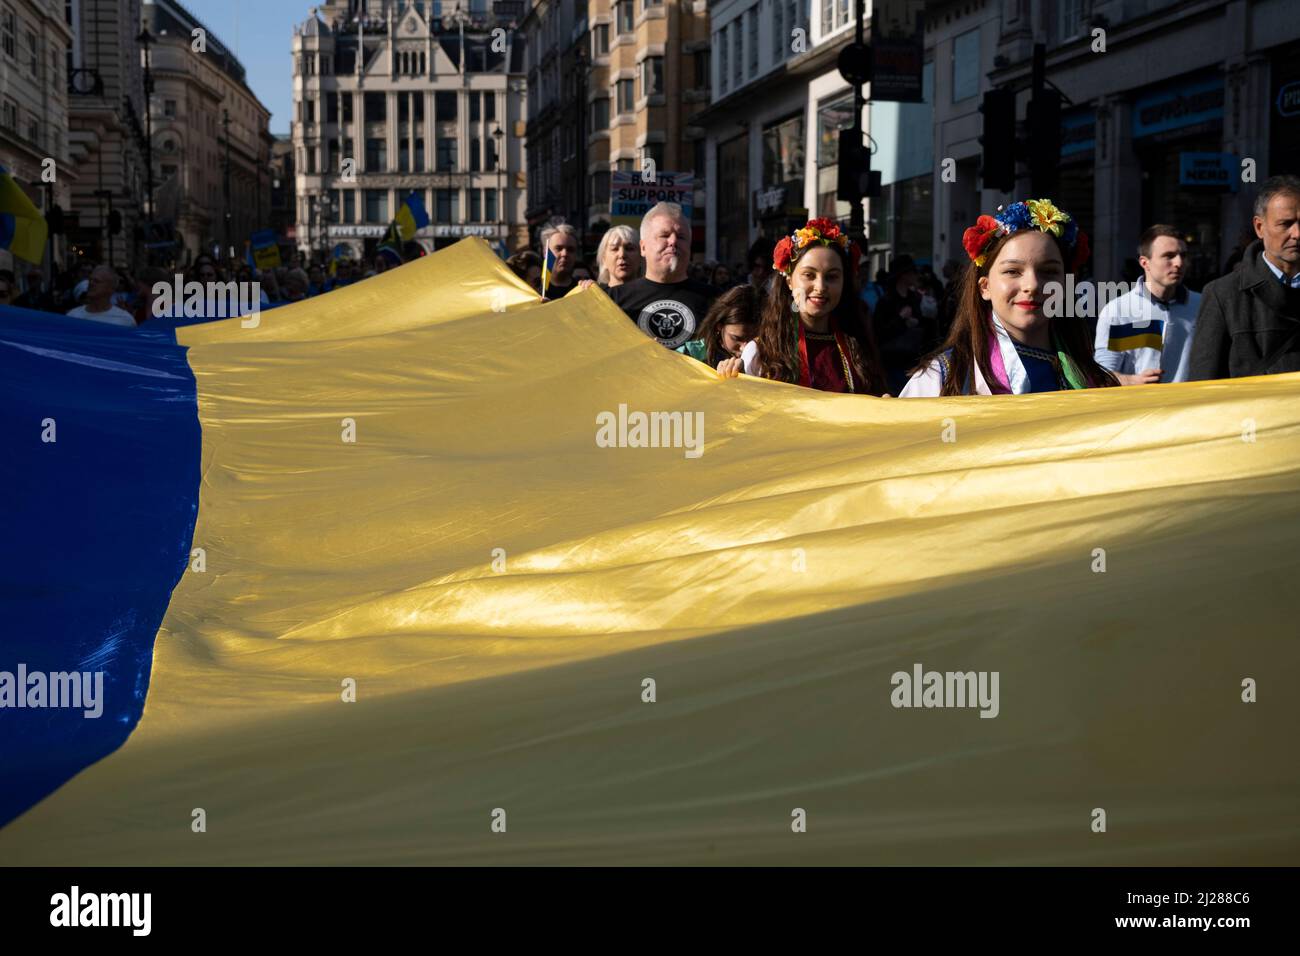 Junge Frauen mit traditionellen Blumen im Haar halten eine riesige ukrainische Flagge, während sich Tausende von Menschen am 26.. März 2022 in London, Großbritannien, in der Hauptstadt zu einem friedensmarsch ‘London steht mit der Ukraine’ versammeln. Der Konflikt in der Ukraine befindet sich nun in seinem zweiten Monat, und ihr Präsident hat die Menschen auf der ganzen Welt dazu aufgerufen, sich gegen die russische Invasion und den anhaltenden Krieg in der Region zu vereinen. Die ukrainische Flagge in Gelb und Blau war überall in dieser bunten Show der Einheit zu sehen. Stockfoto